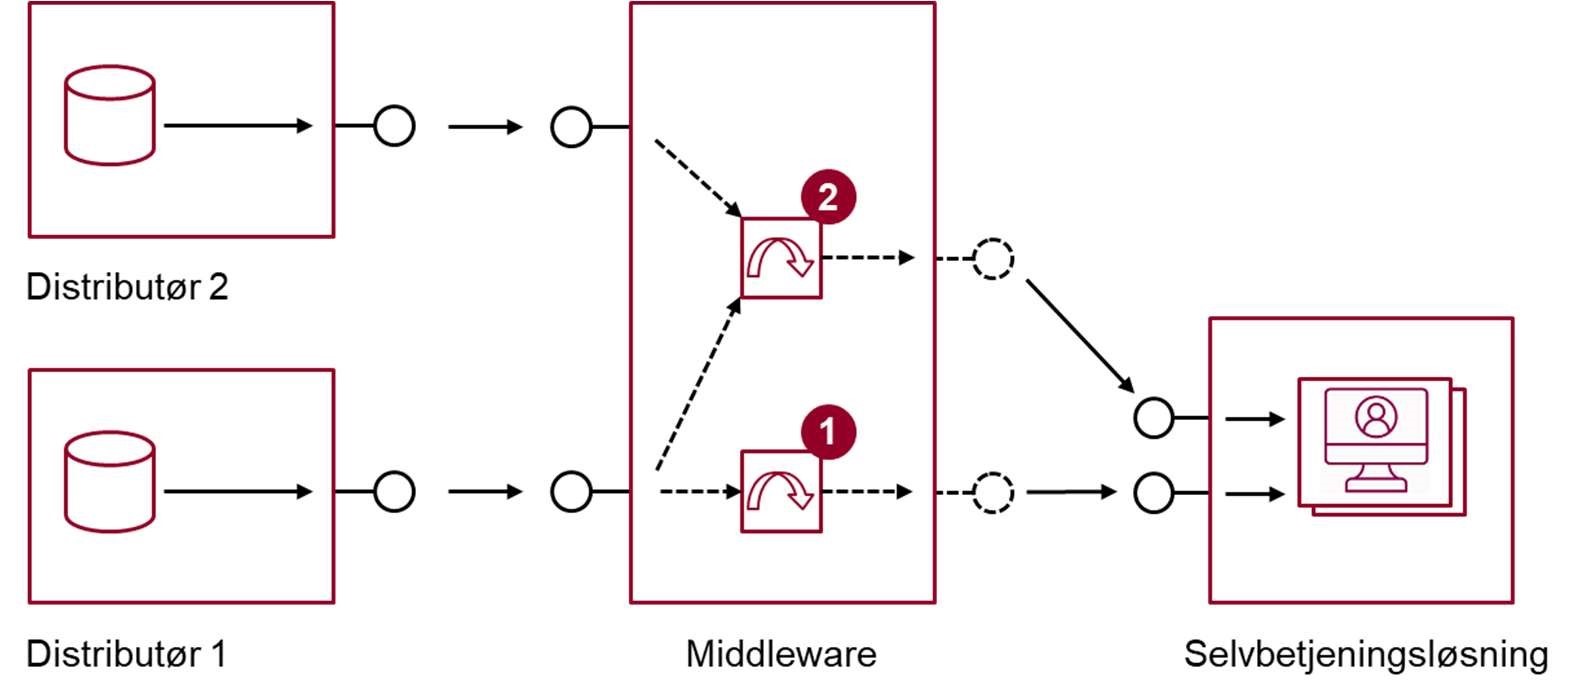 Figur 8 viser en skitse af, hvordan en middleware-platform/integrationskomponent kan 1) implementere transformation mellem dataformater og/eller 2) sammenstille data fra forskellige kilder til en ny, anvendelsesorienteret service målrettet selvbetjeningsløsningen.